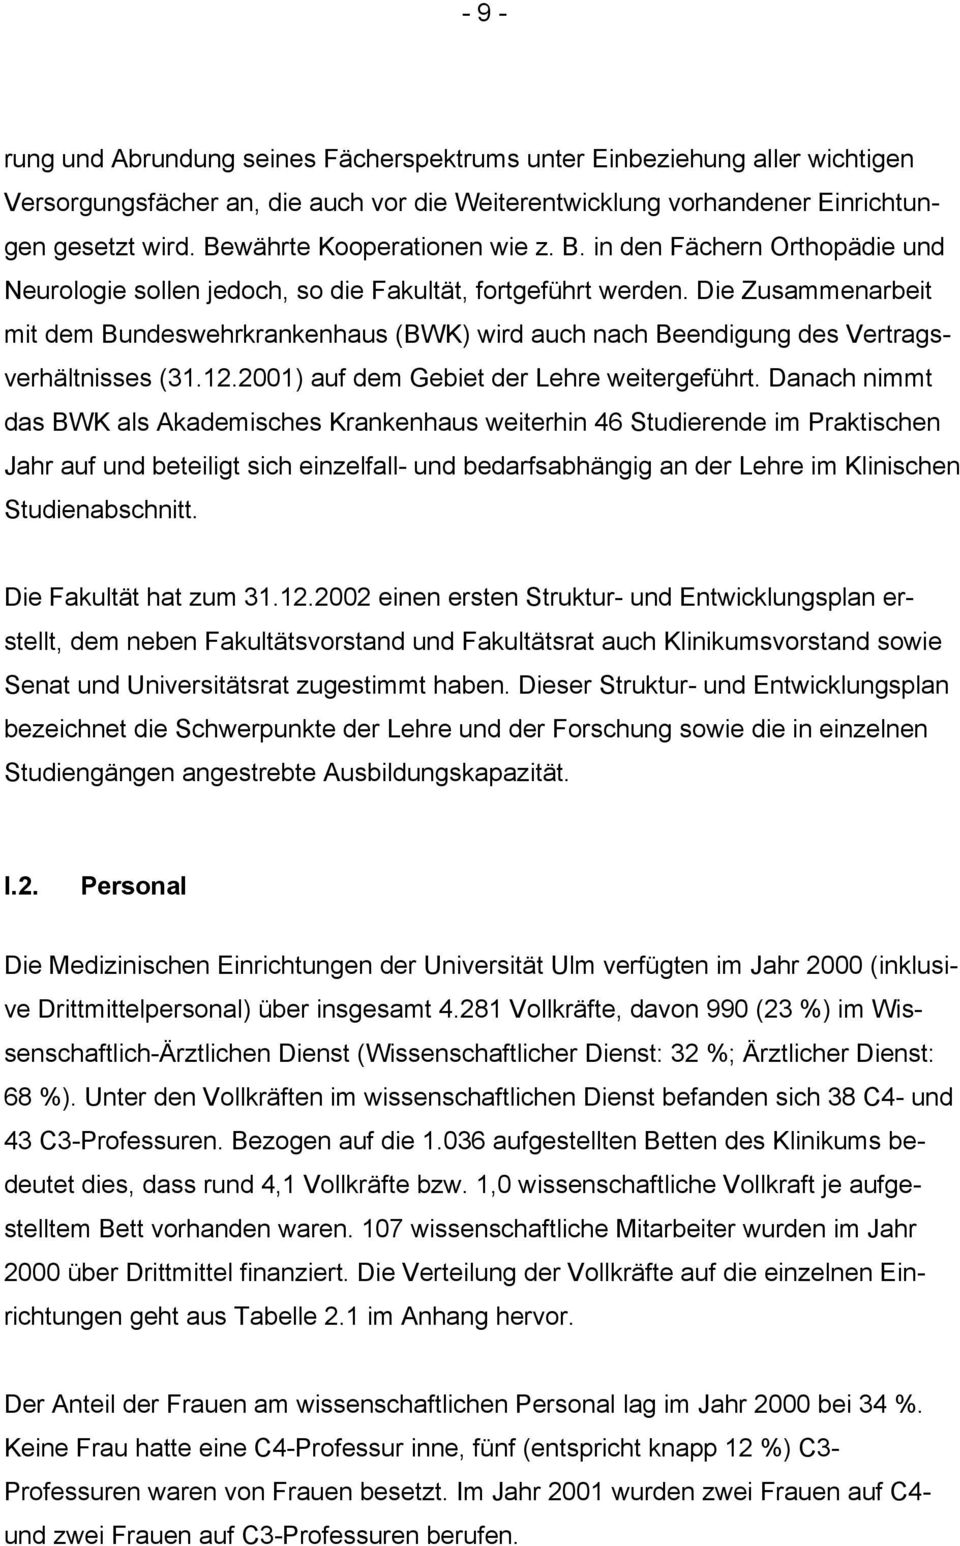 Die Zusammenarbeit mit dem Bundeswehrkrankenhaus (BWK) wird auch nach Beendigung des Vertragsverhältnisses (31.12.2001) auf dem Gebiet der Lehre weitergeführt.